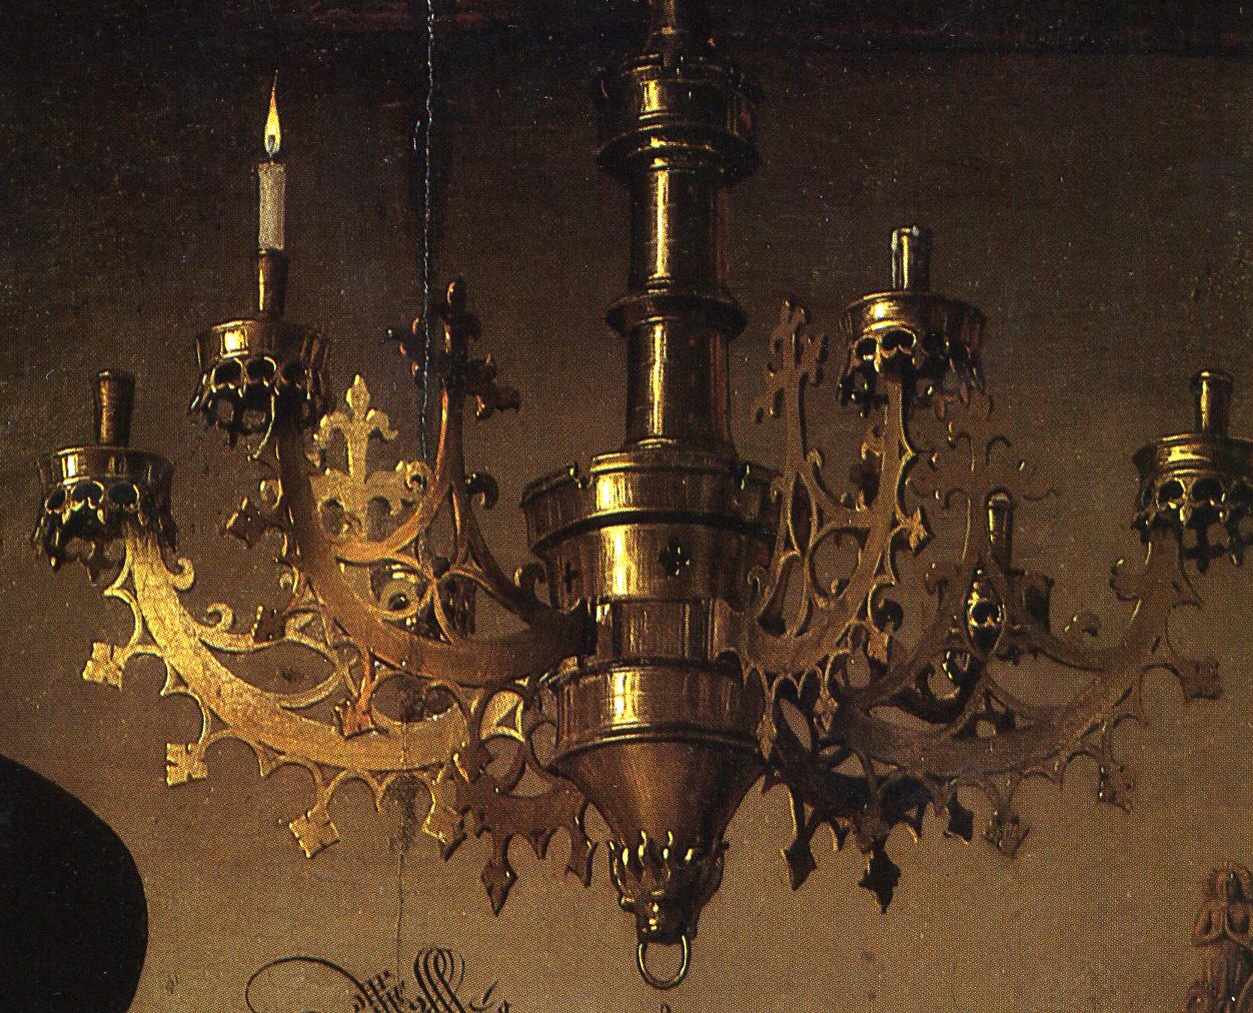 Detalle del candelabro donde se aprecian restos de cera consumida en el brazo a la derecha del de la vela encendida.